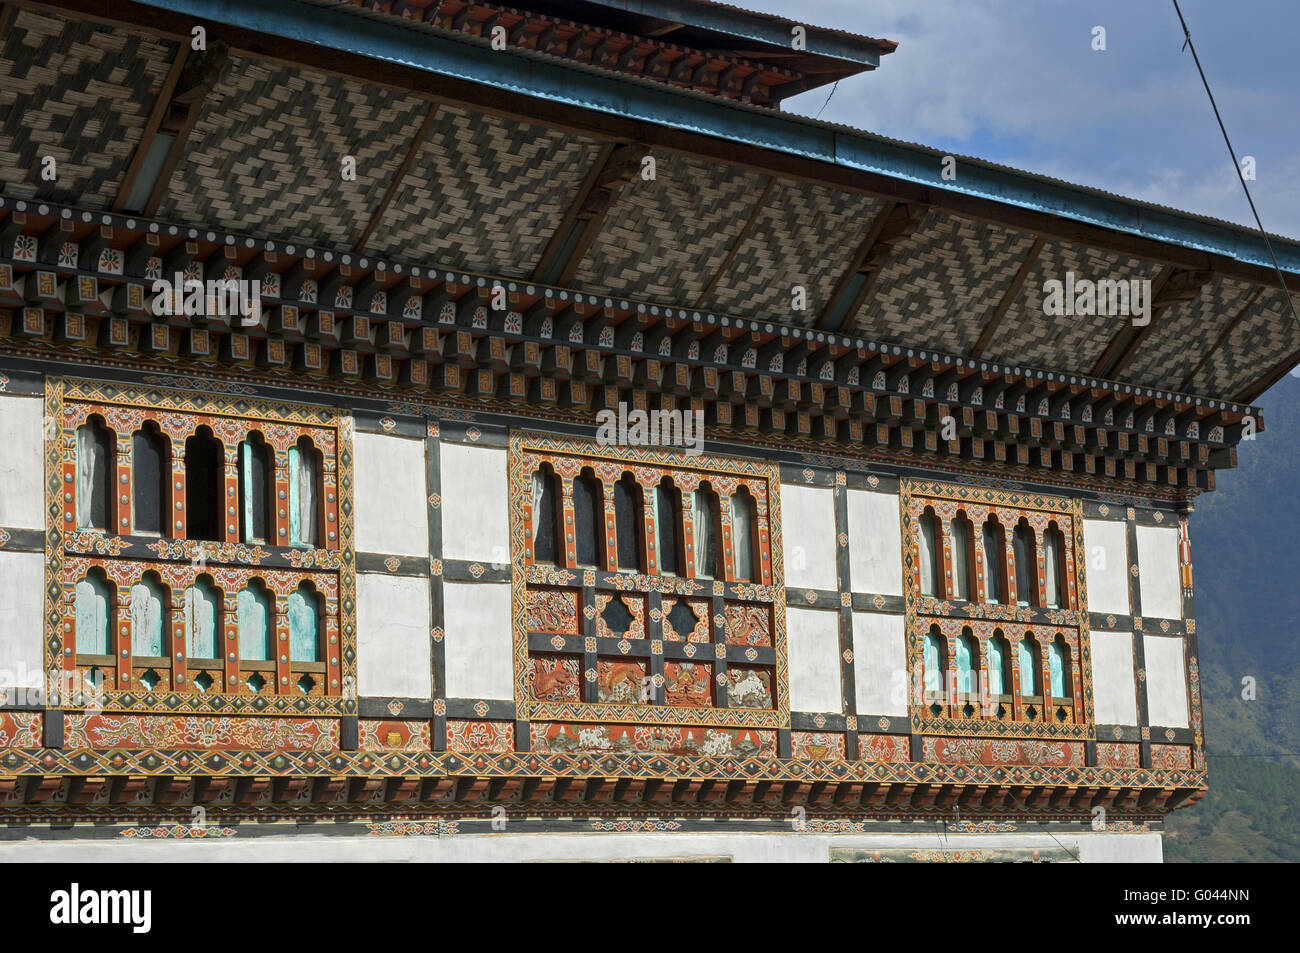 Ornate avant d'une maison de ferme, le Bhoutan Bhoutan Banque D'Images